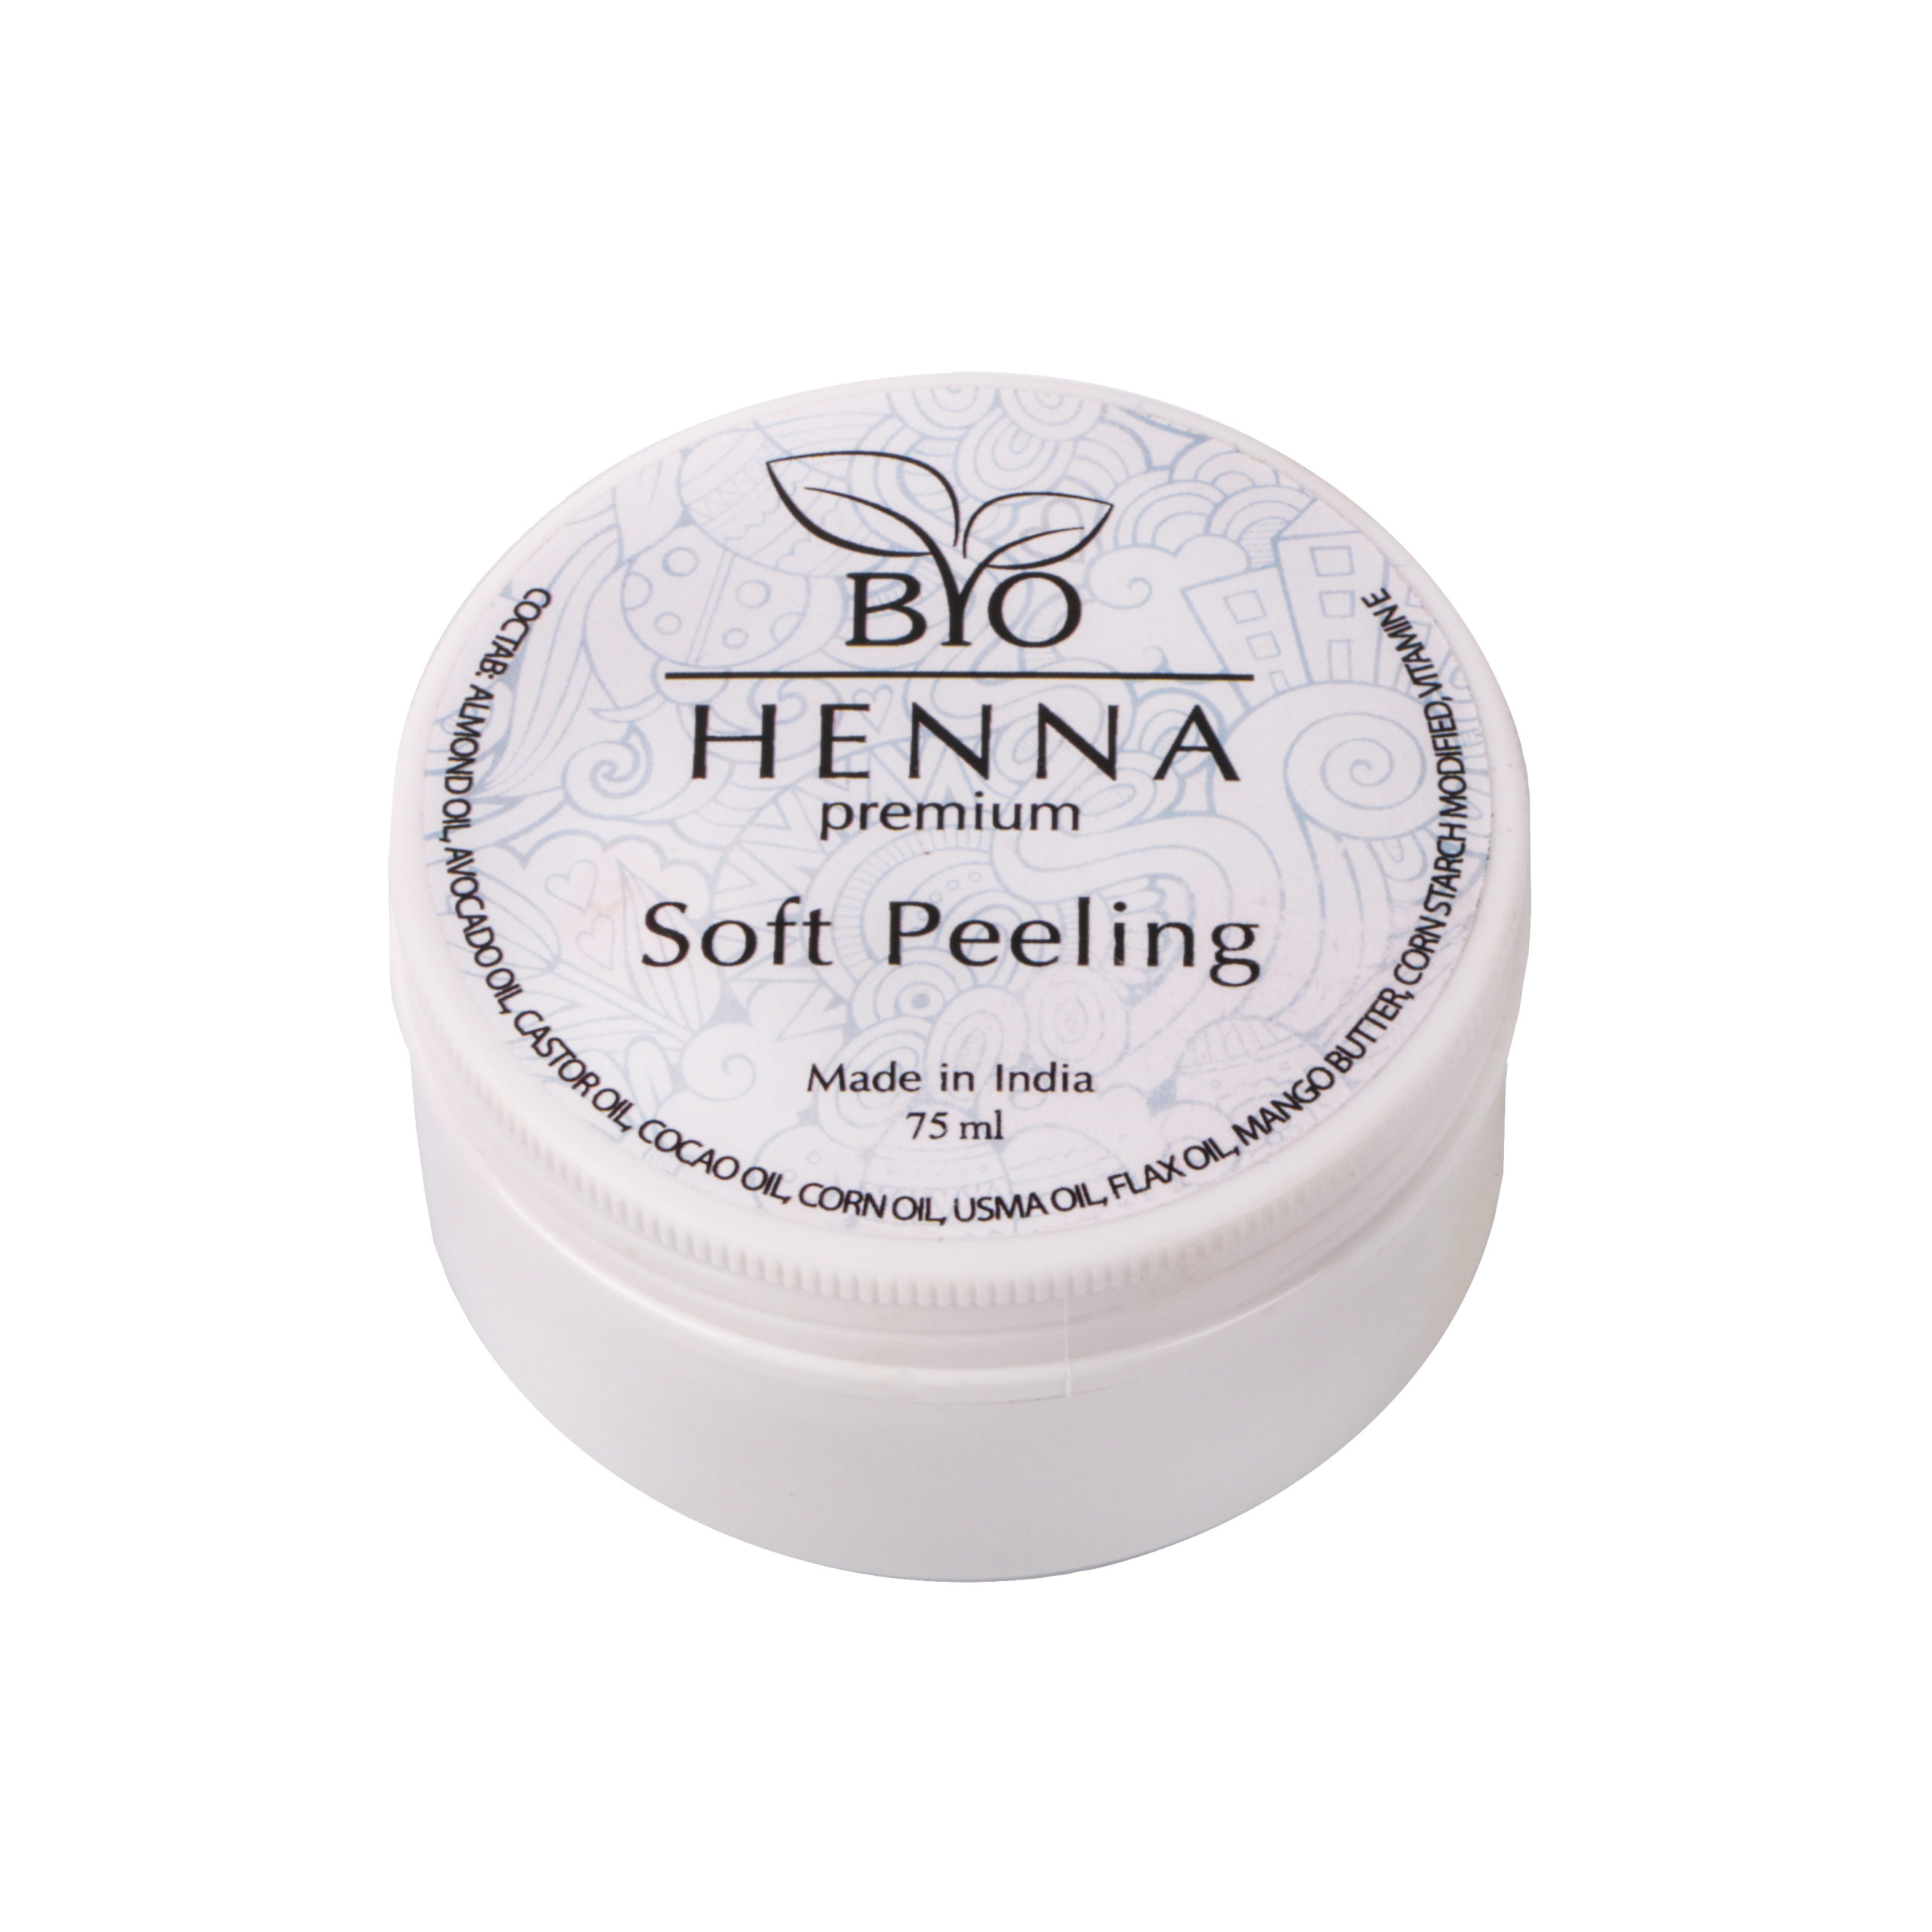 Bio Henna Premium Soft Peeling 75 ml Henna pudrowa